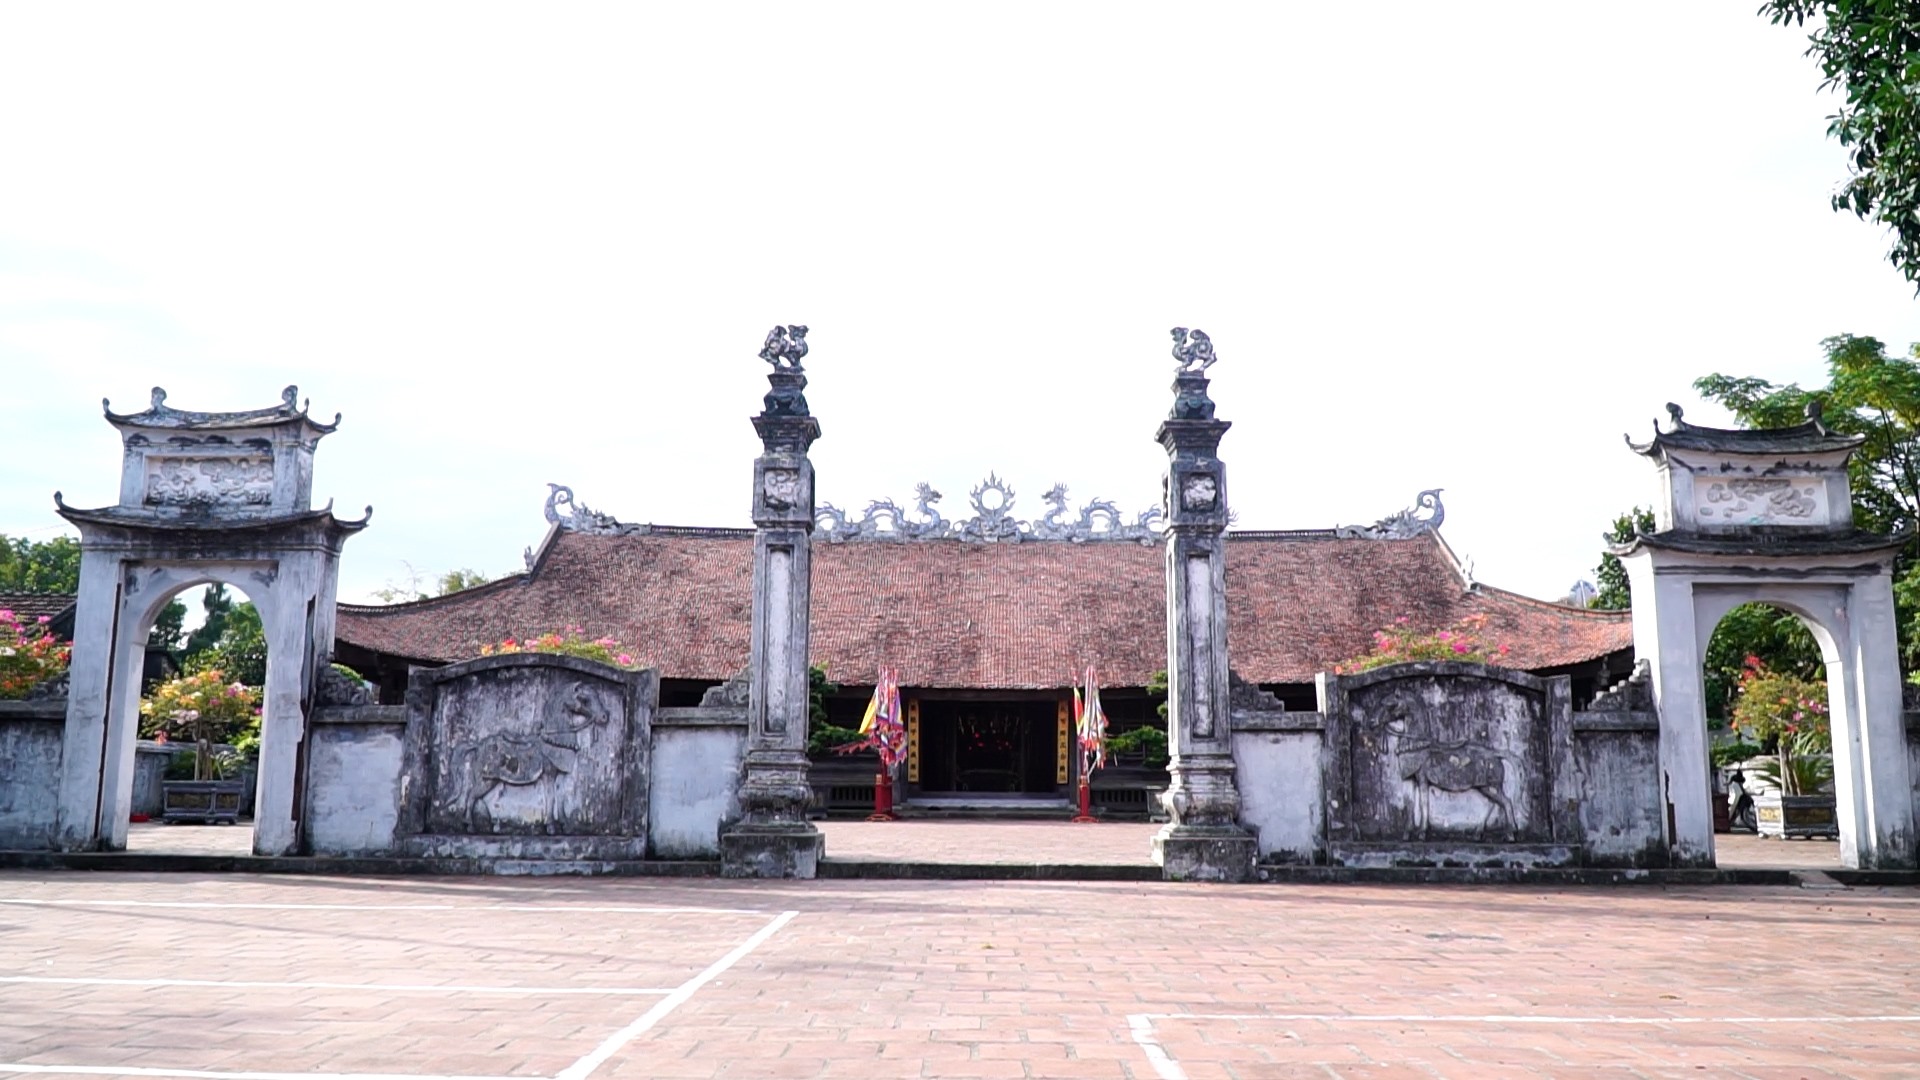 Đình Trà Cổ, gắn liền với lịch sử hình thành và phát triển của vùng đất Trà Cổ ngày nay, là một trong những ngôi đình cổ có quy mô lớn nhất ở Việt Nam. Đình được xây dựng vào năm 1461 thời Hậu Lê. Ảnh: Nguyễn Hưng